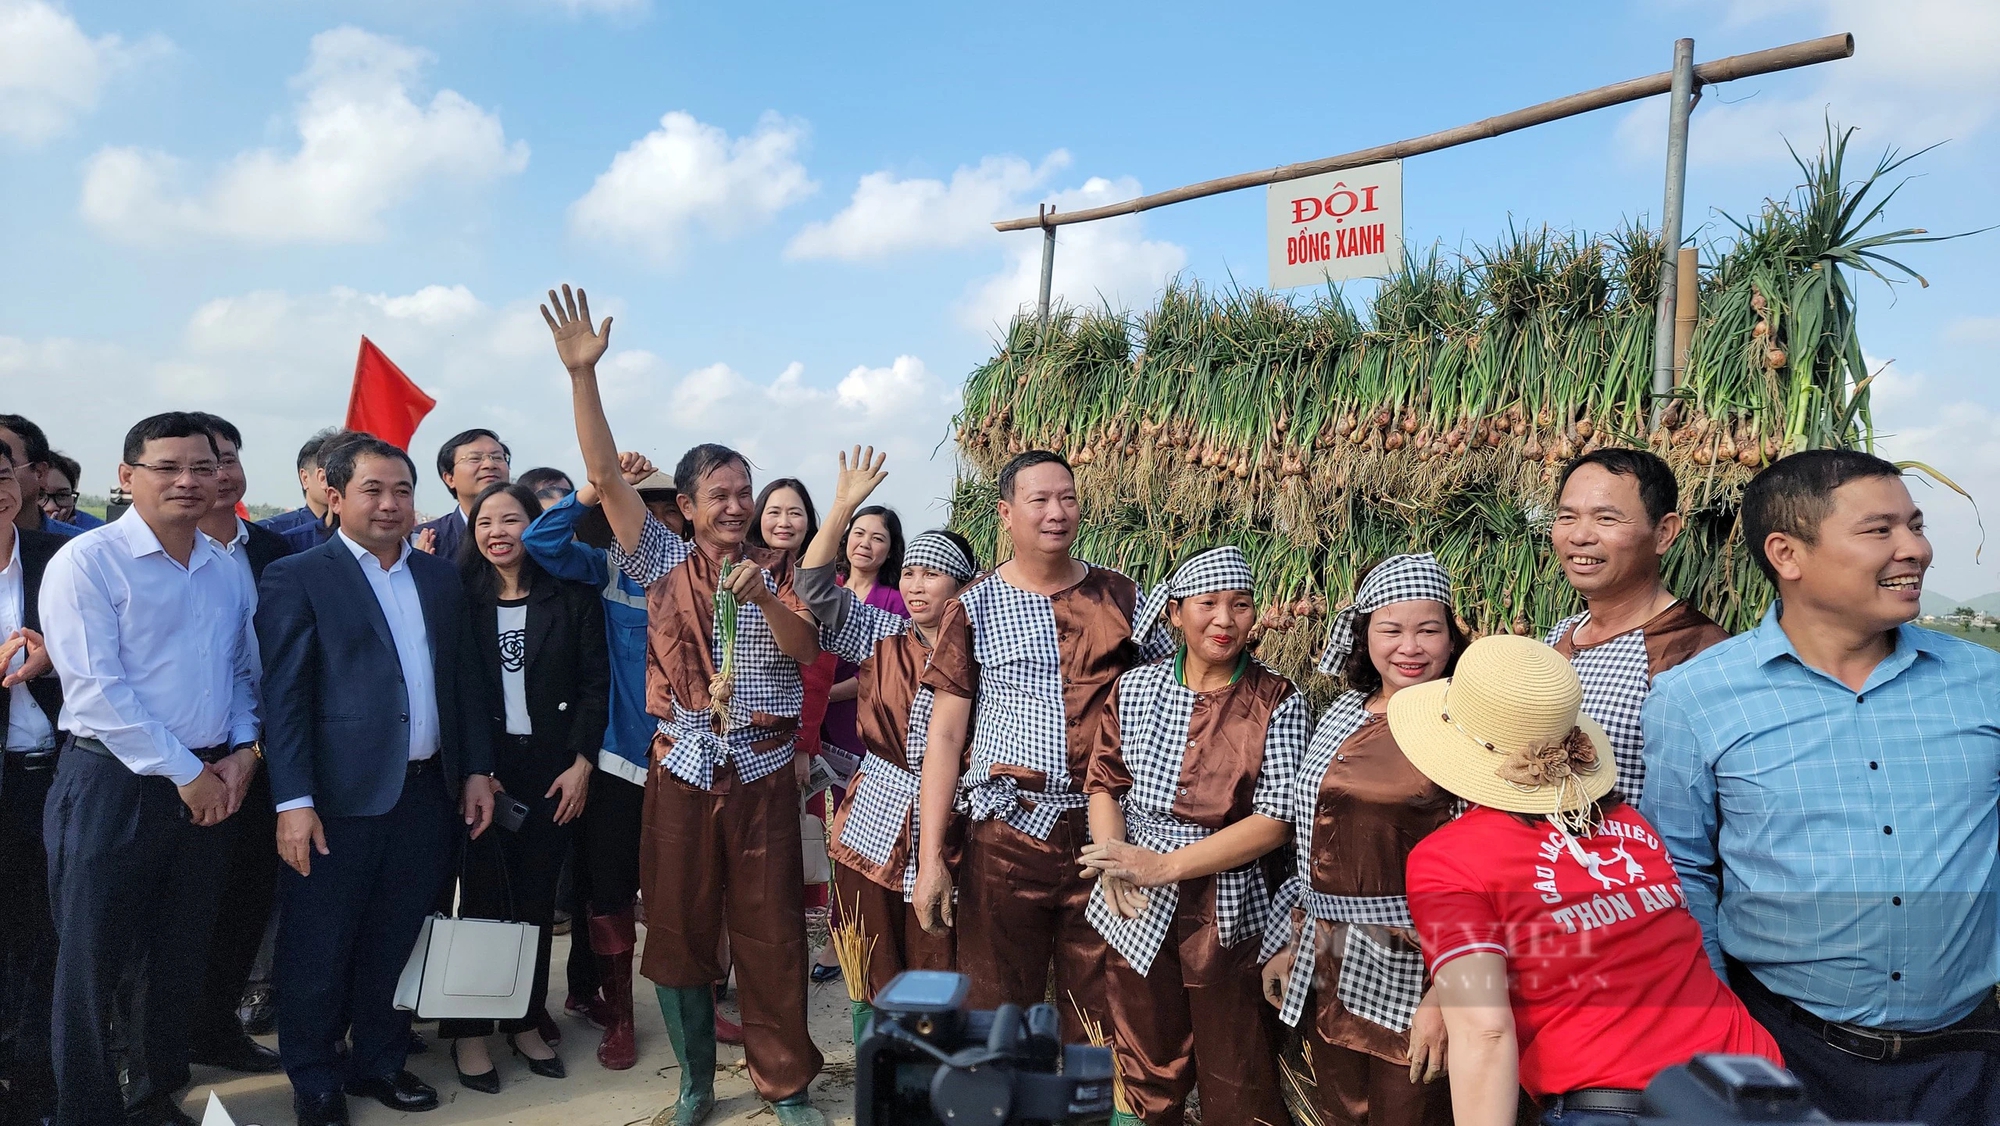 Bộ trưởng Lê Minh Hoan, Bí thư Tỉnh ủy Hải Dương Trần Đức Thắng xuống đồng cổ vũ nông dân thi nhổ hành, tỏi- Ảnh 16.